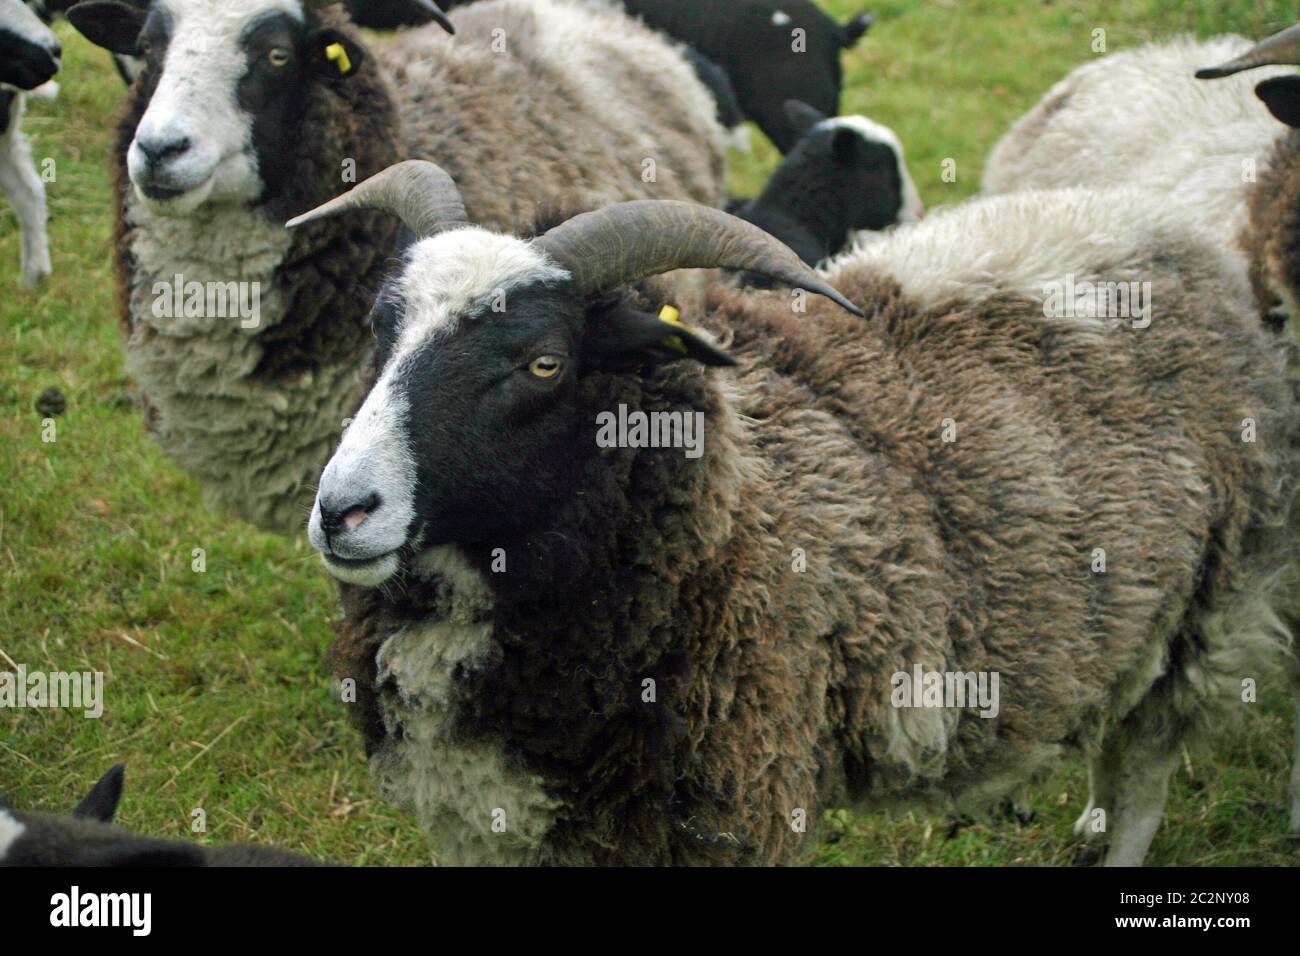 Ovejas de raza rara con cuernos y una capa gruesa negra, blanca y marrón. Probablemente Jacobs raza de ovejas. Foto de stock